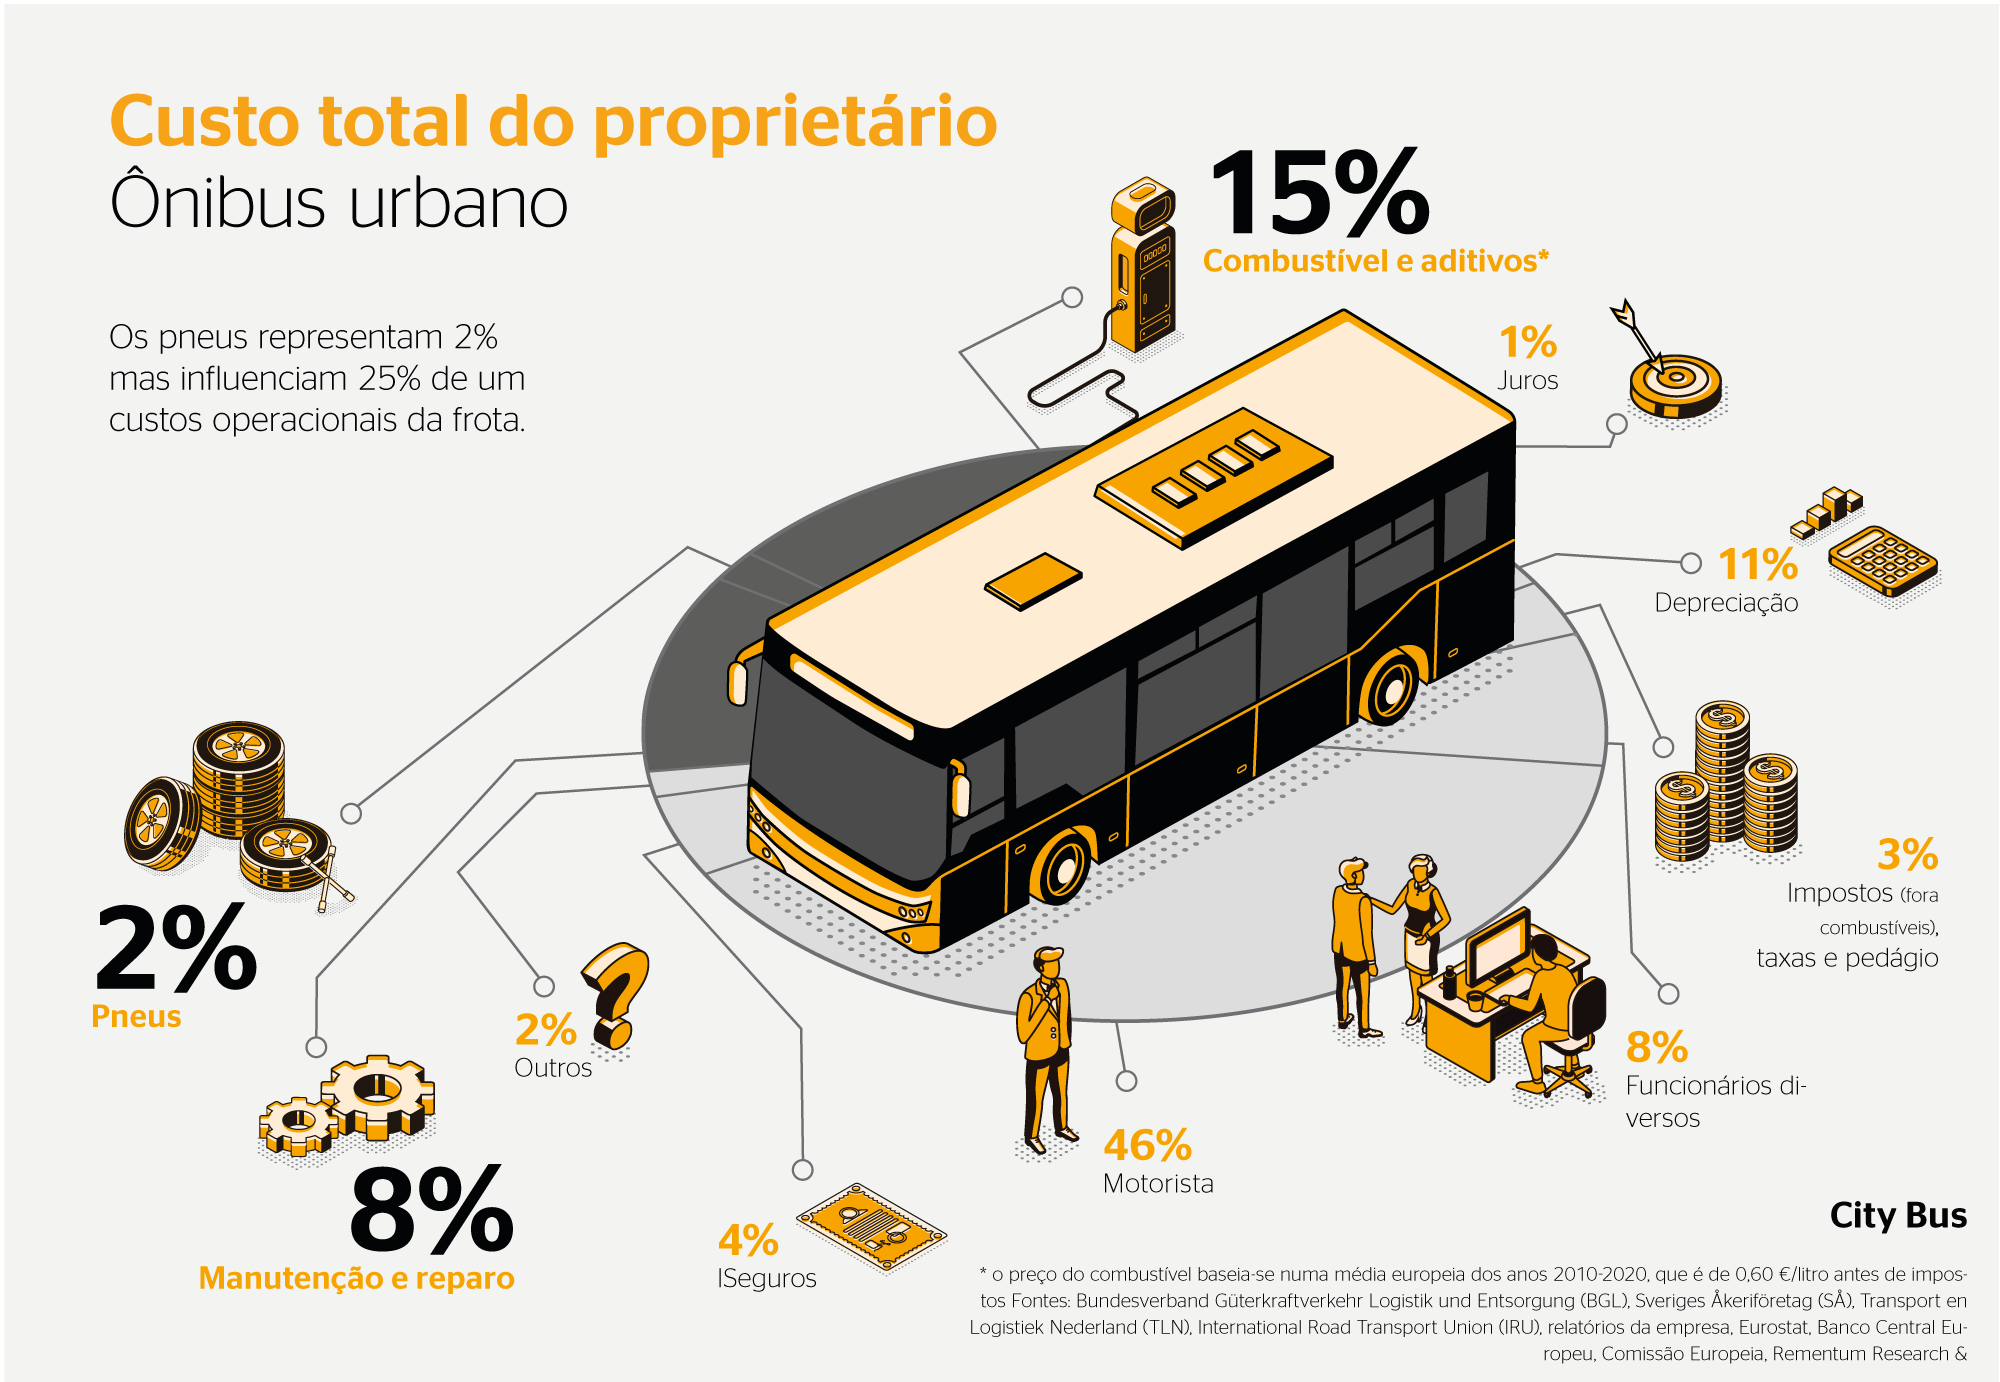 (imagem com ilustração de ônibus urbano, com elementos ao redor simbolizando os custos da frota)